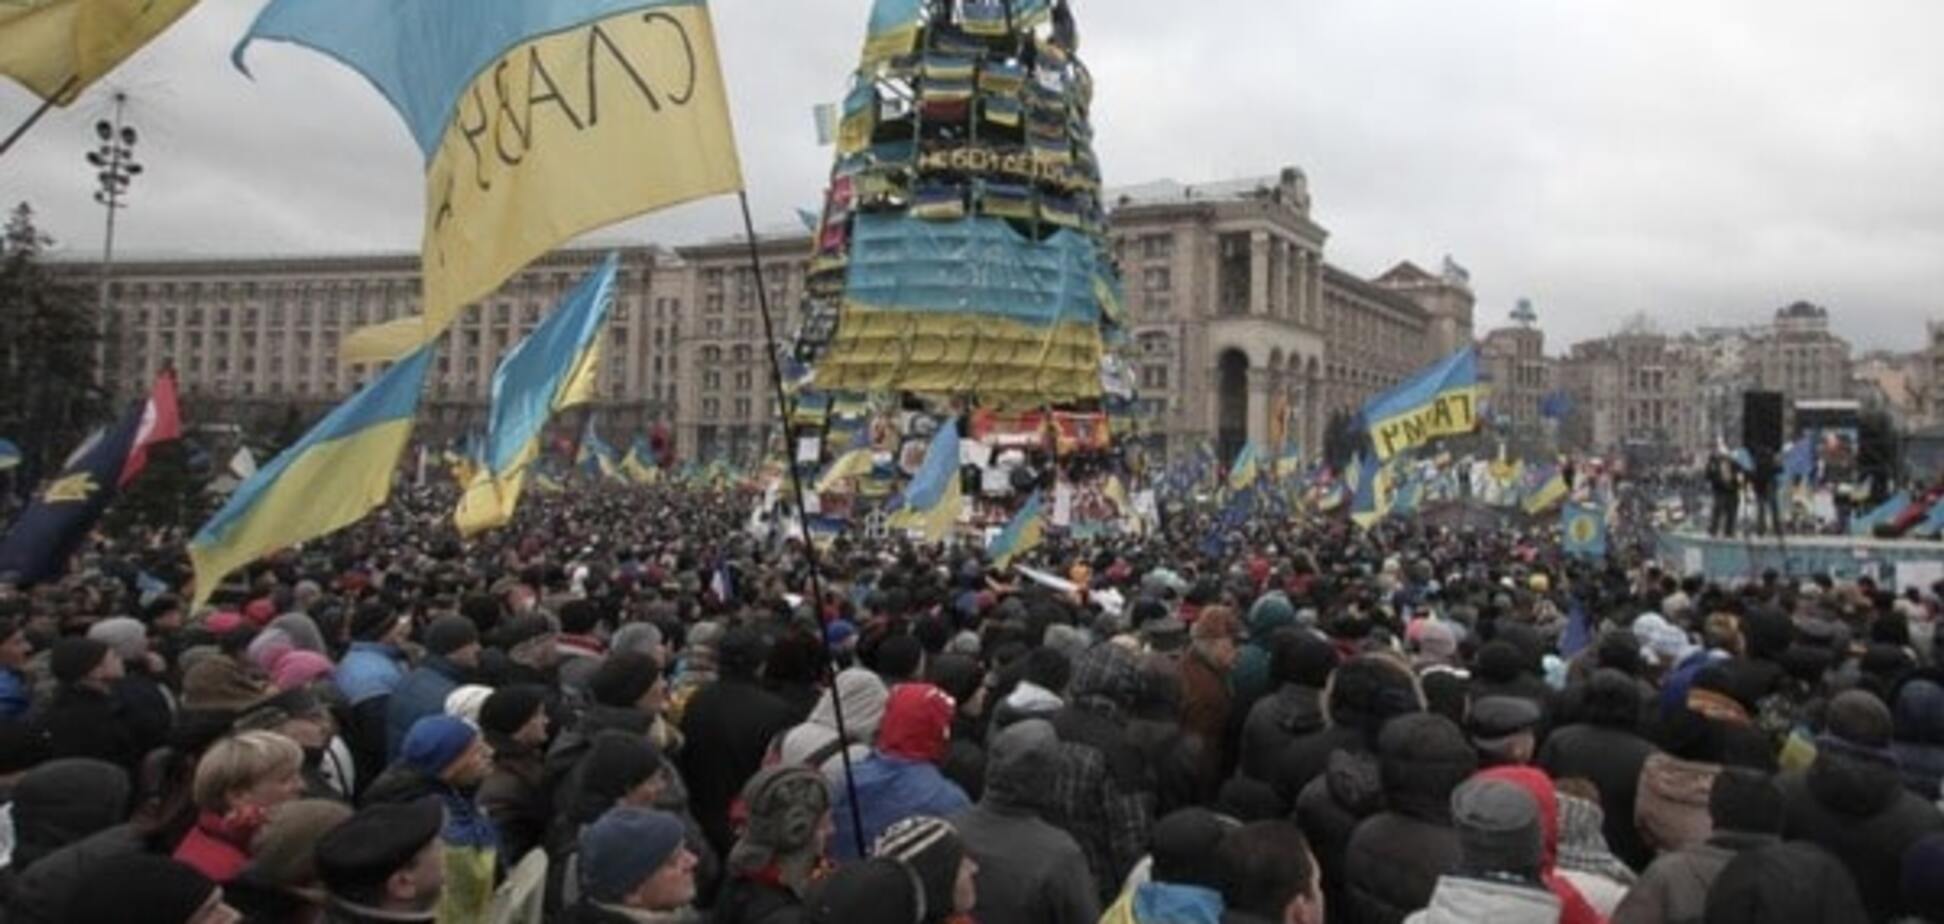 Аж трясет: к Евромайдану негативно относятся почти 100% россиян - опрос